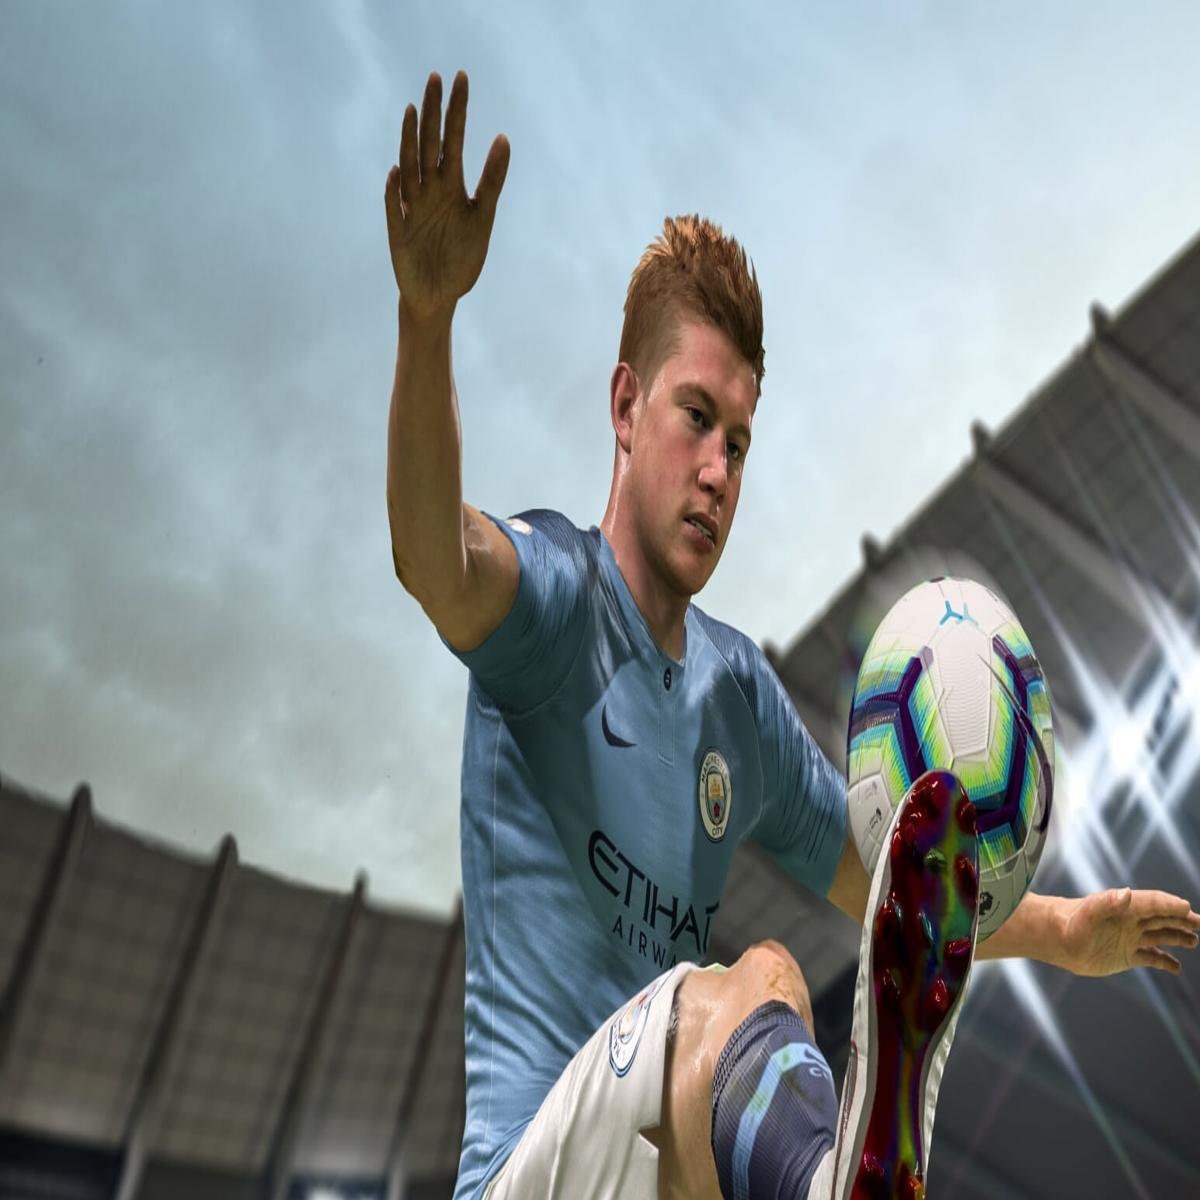 FIFA 19: dicas para mandar bem na Weekend League do FUT Champions